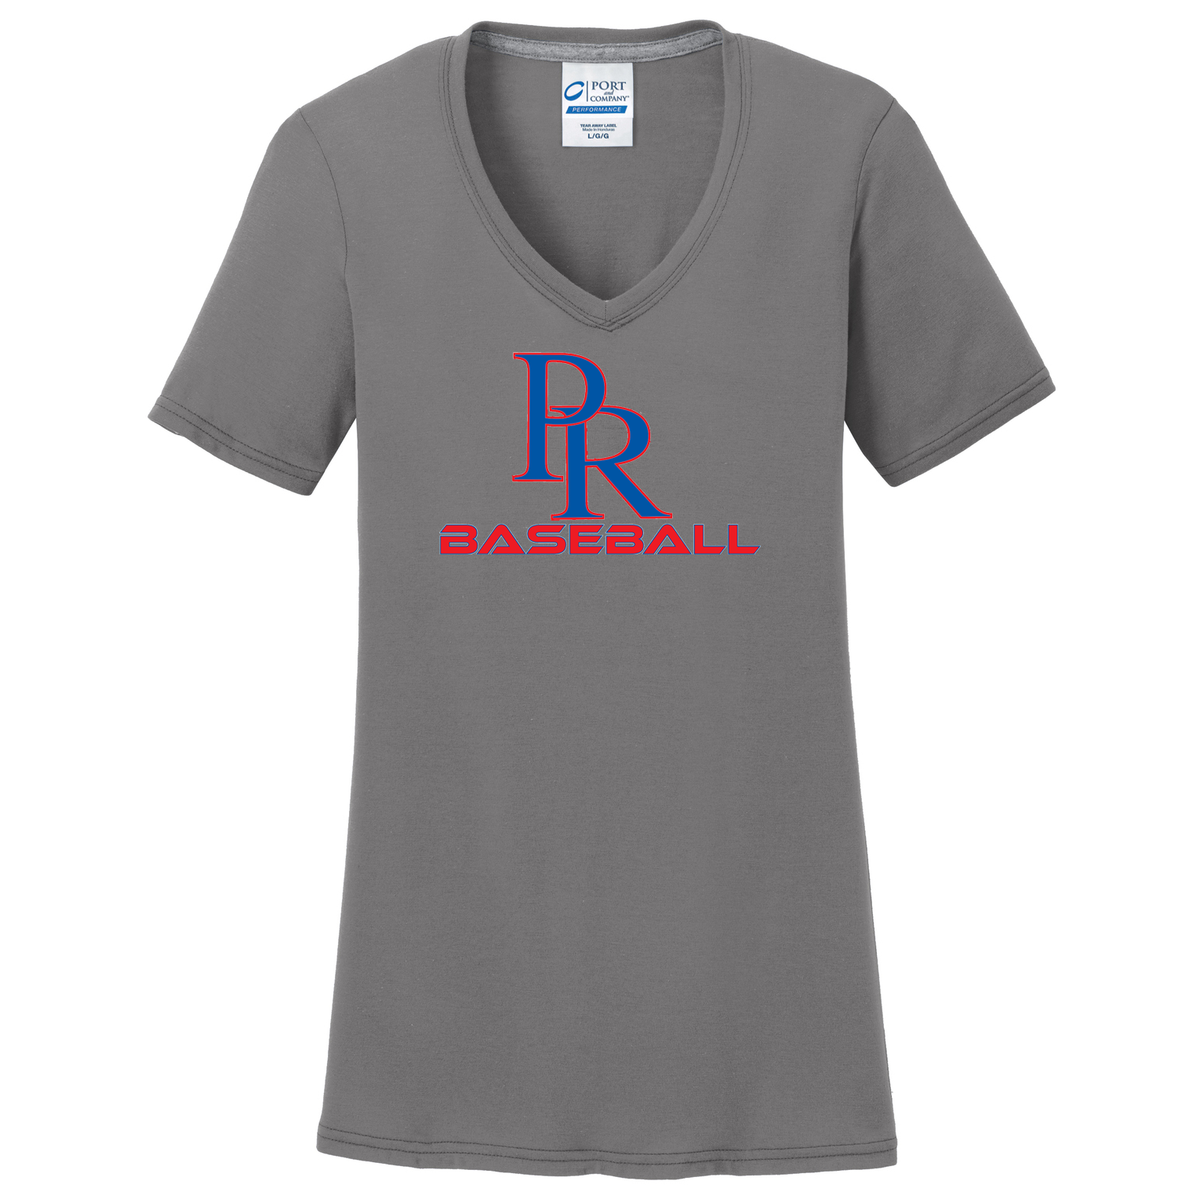 PR Baseball  Women's T-Shirt